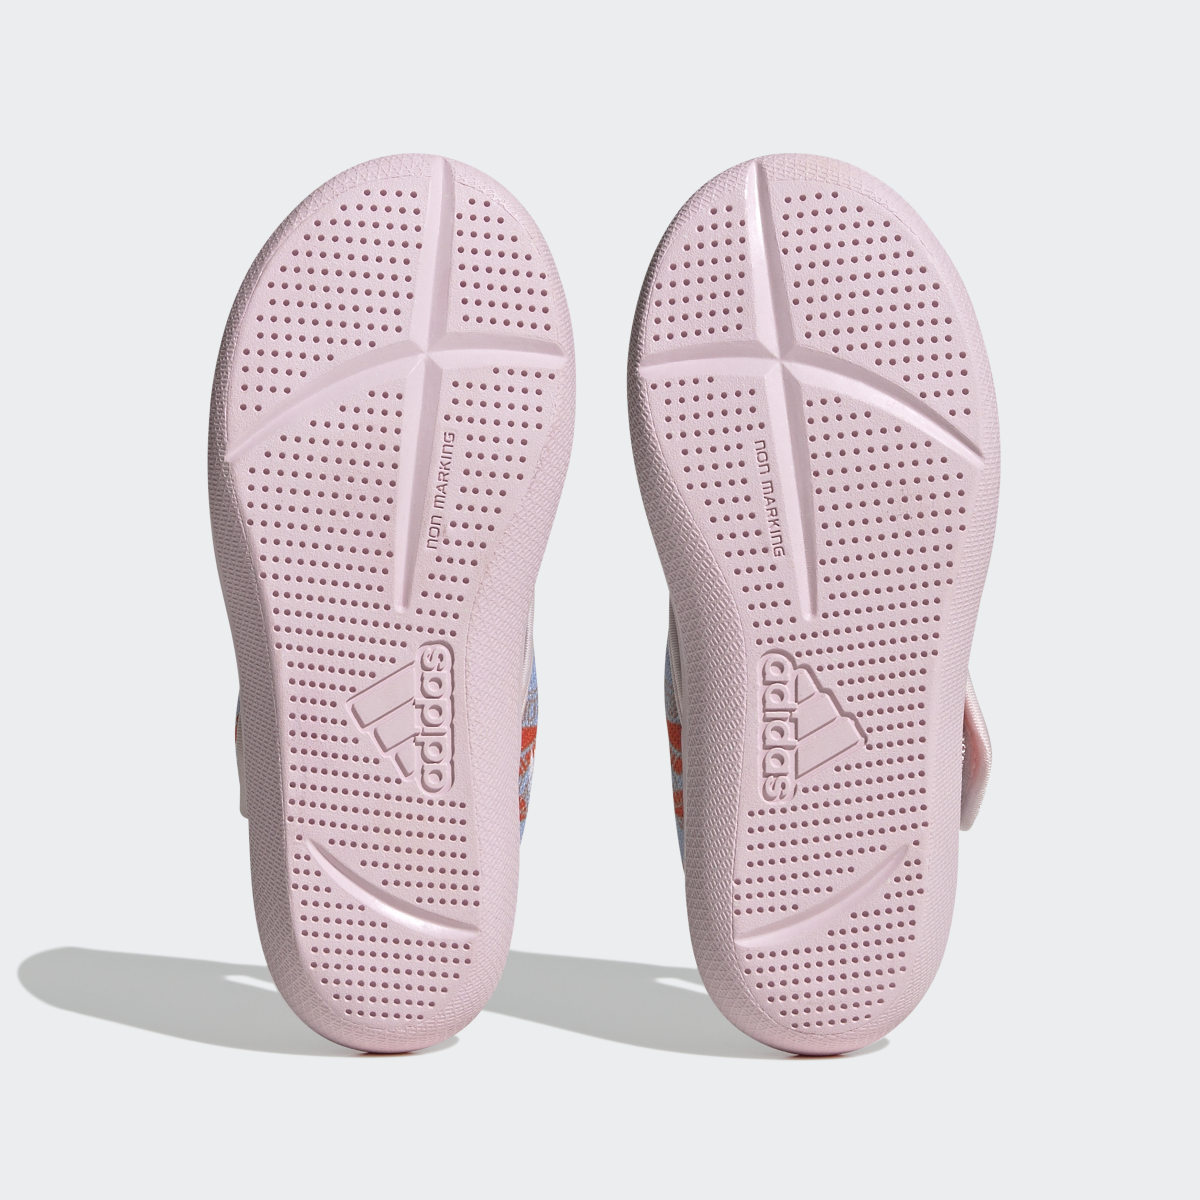 Adidas Sandálias de Natação AltaVenture 2.0 Vaiana adidas x Disney. 4